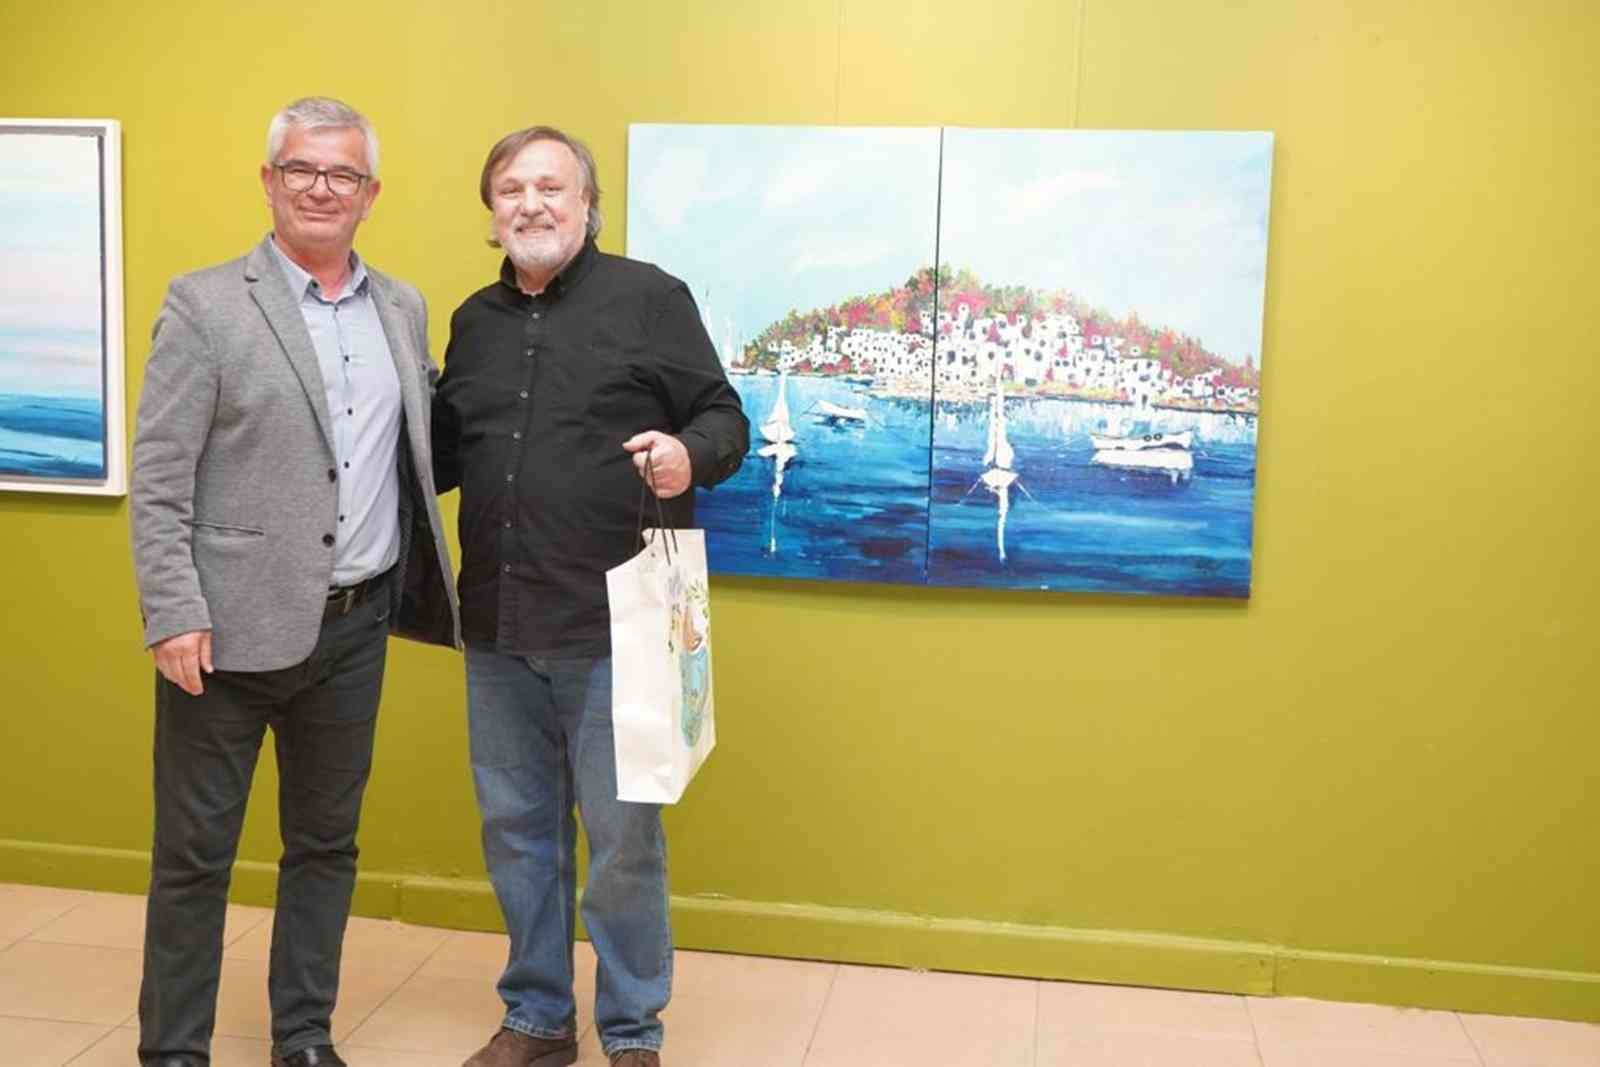 Ayvalık Belediyesi Sanat Galerisi Ressam Tayfun Önel’in “Renkler ve Lekeler” isimli resim sergisine ev sahipliği yapıyor. 8 Nisan akşamına kadar ...